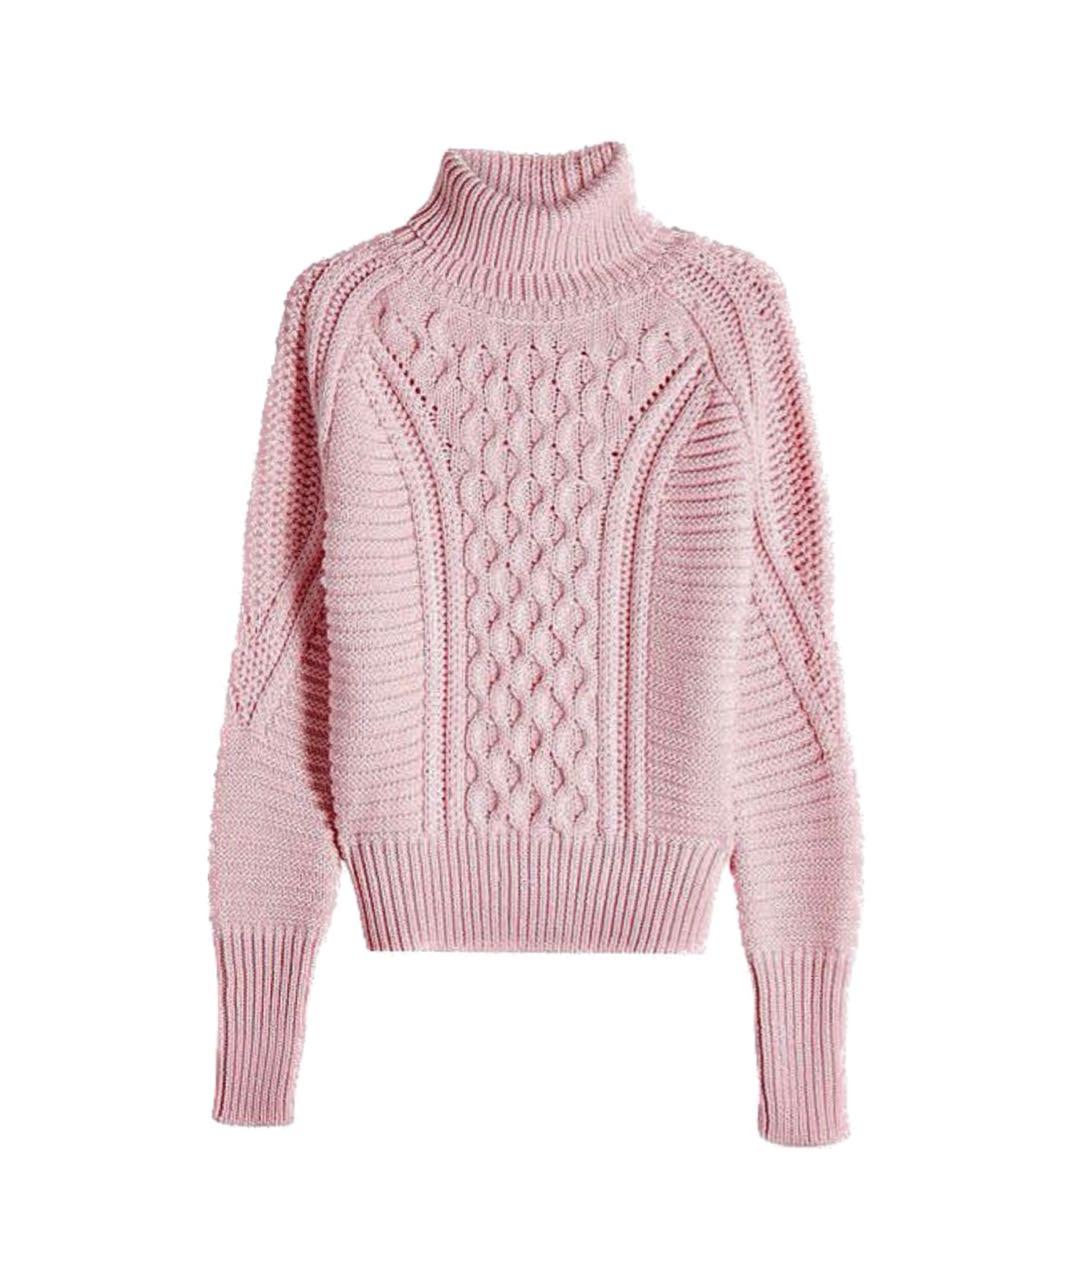 MARY KATRANTZOU Розовый шерстяной джемпер / свитер, фото 1